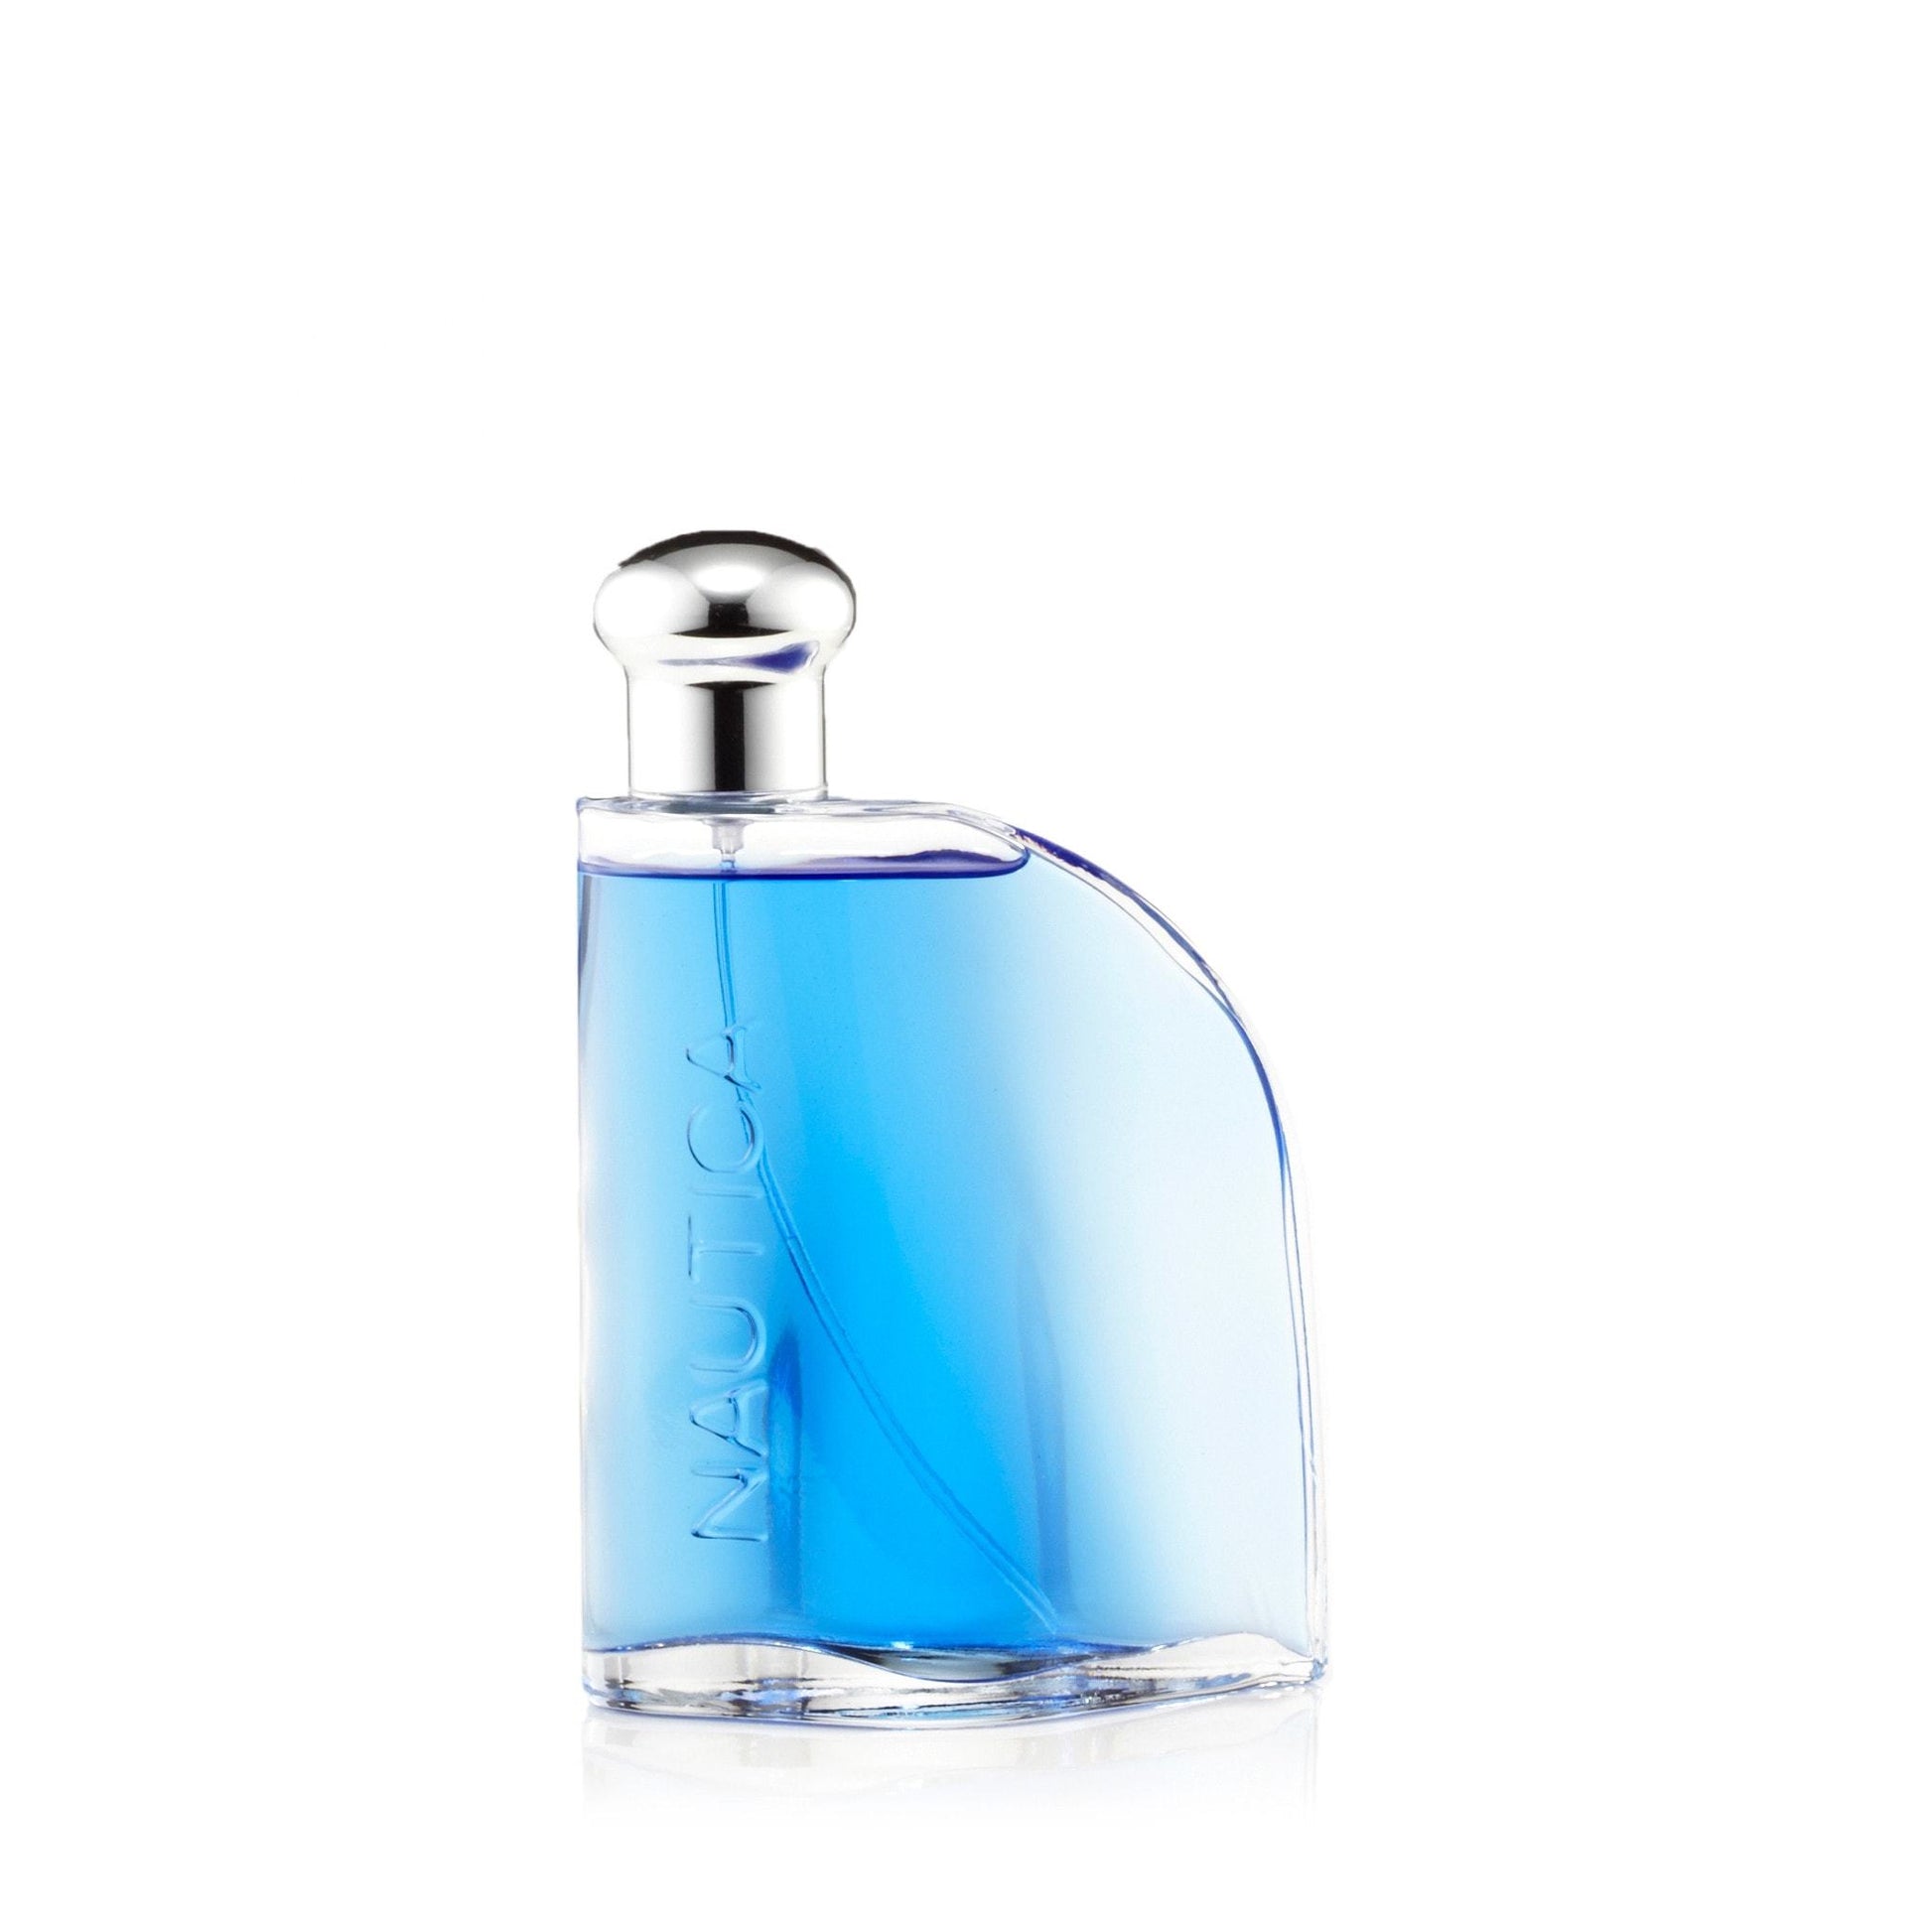 Blue Eau de Toilette Spray for Men by Nautica, Product image 2